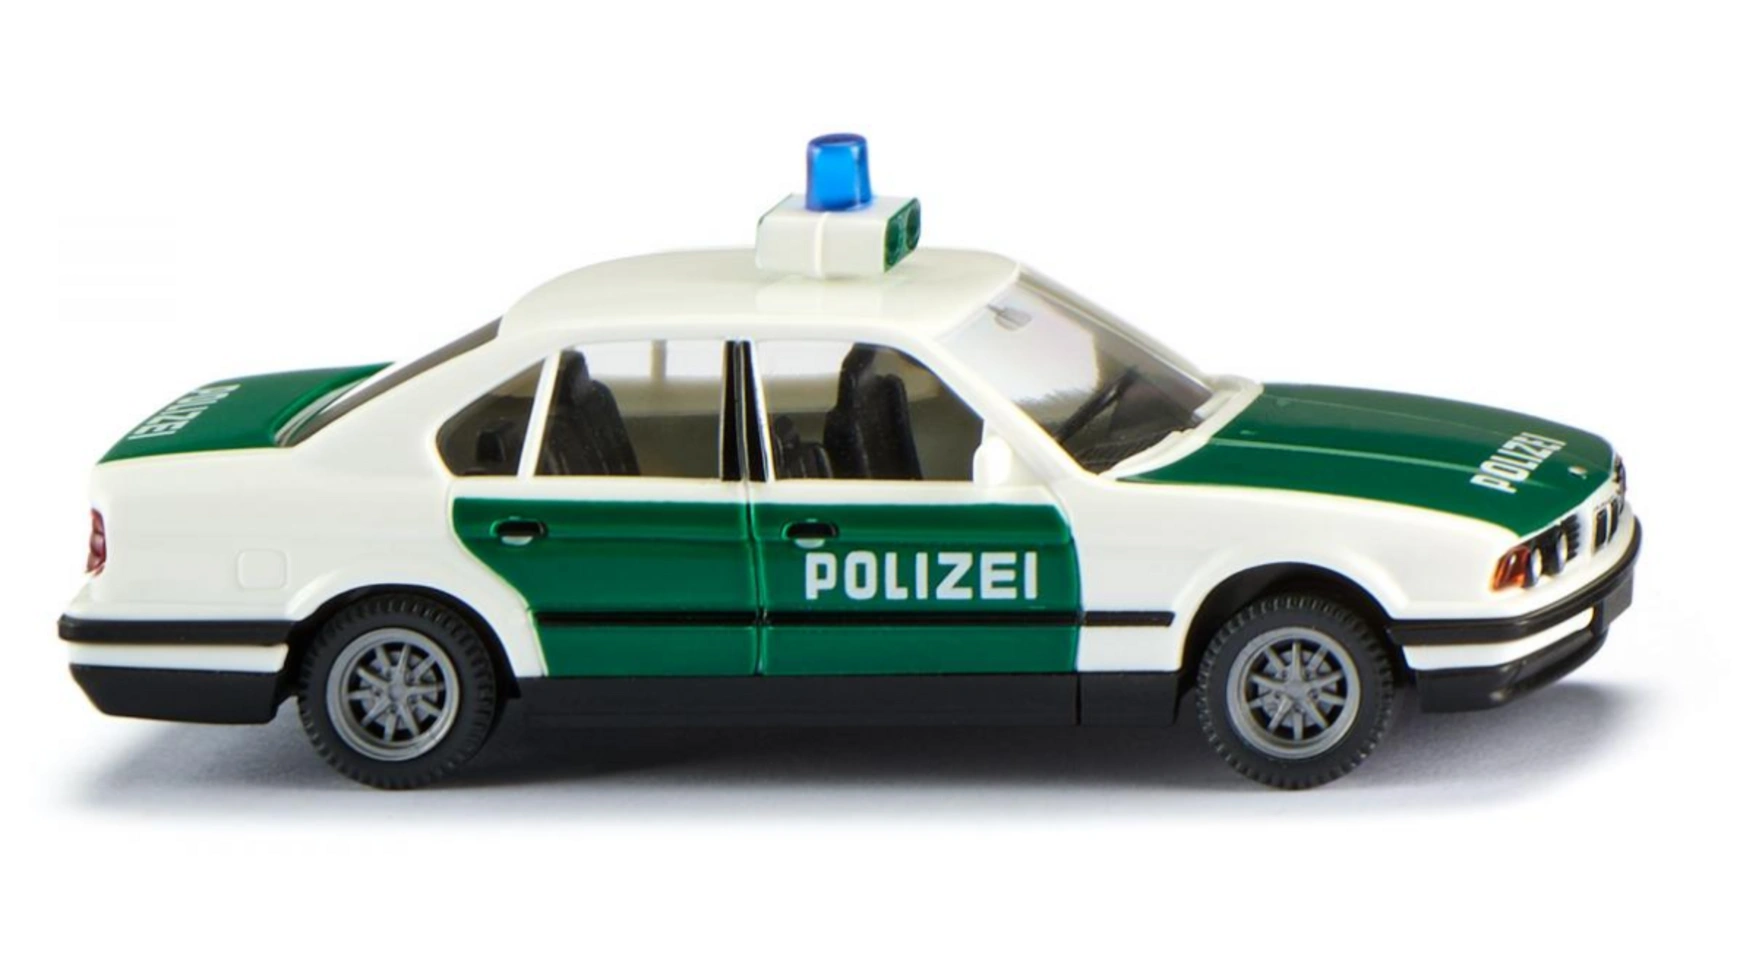 цена Wiking 1:87 Полиция BMW 525i